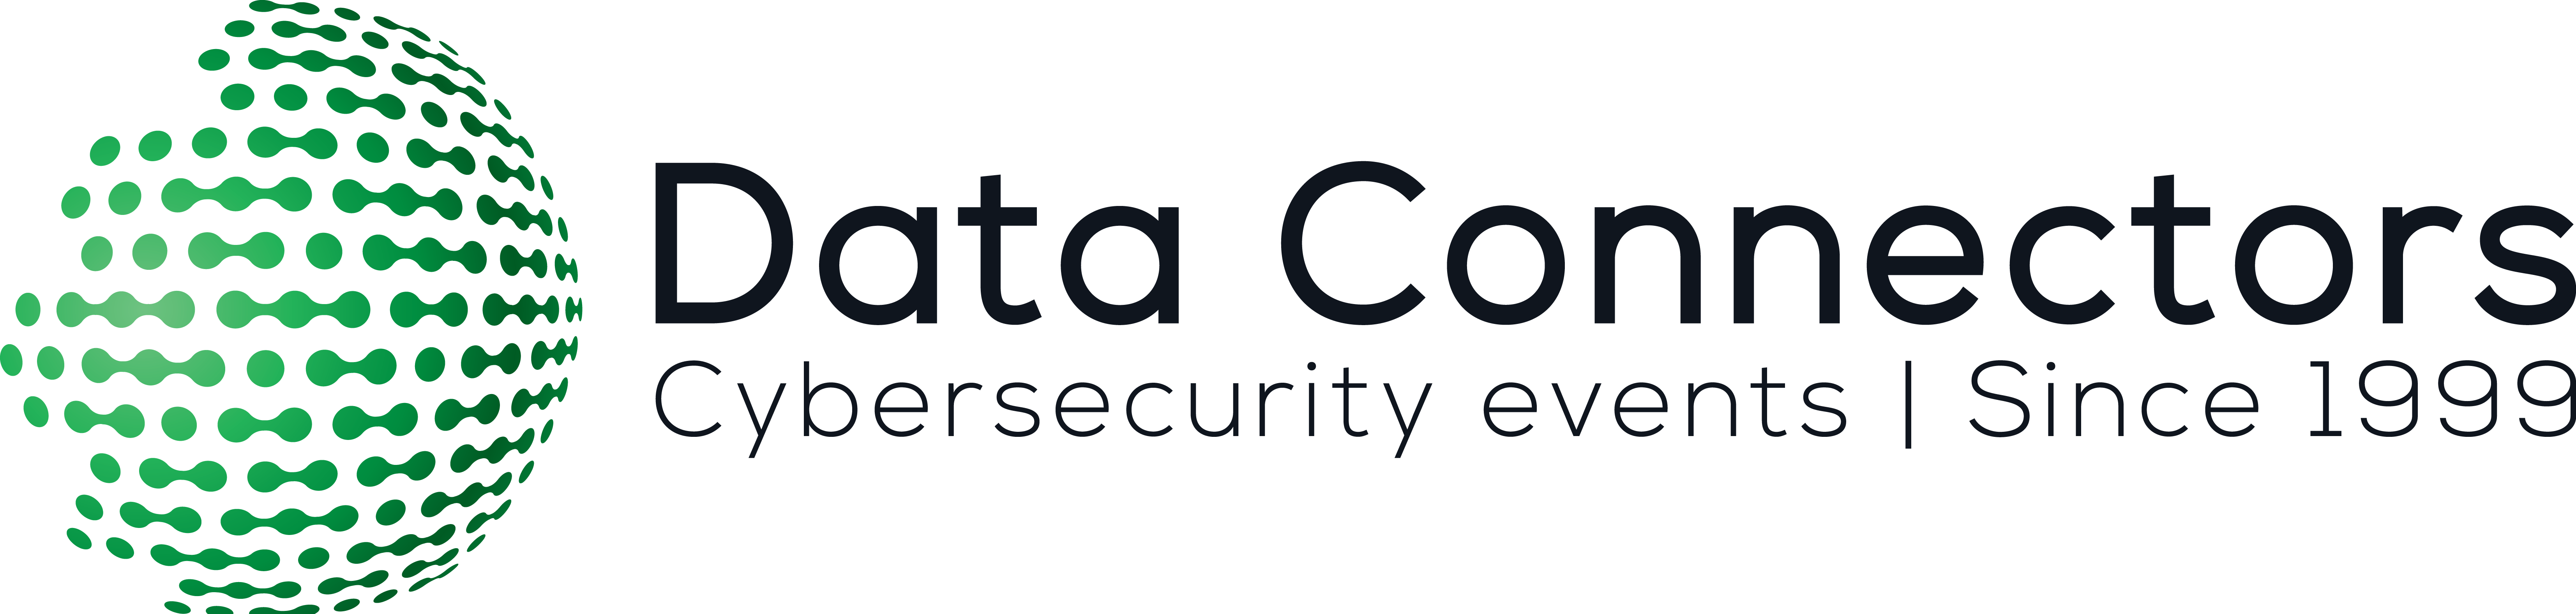 Data Connectors LA 2021